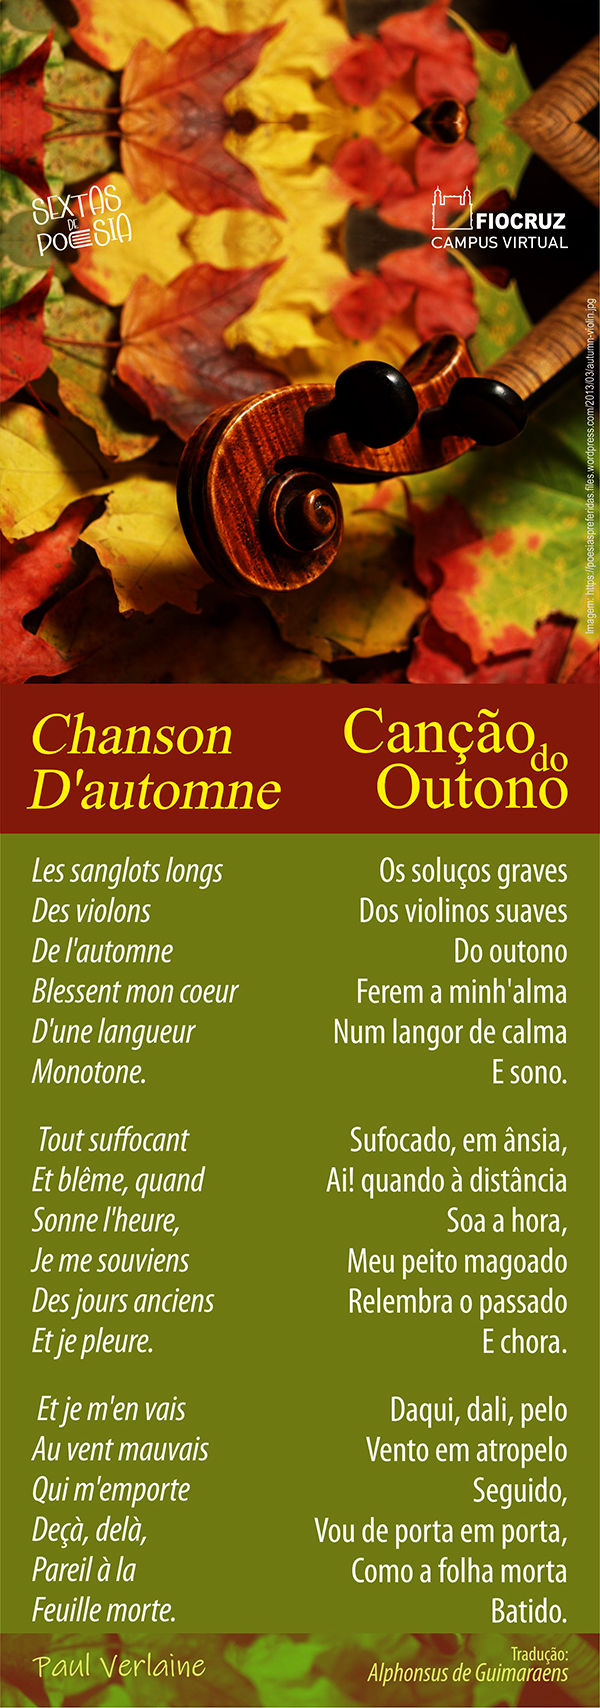 'Canção do Outono' ilustra o Sextas de Poesia